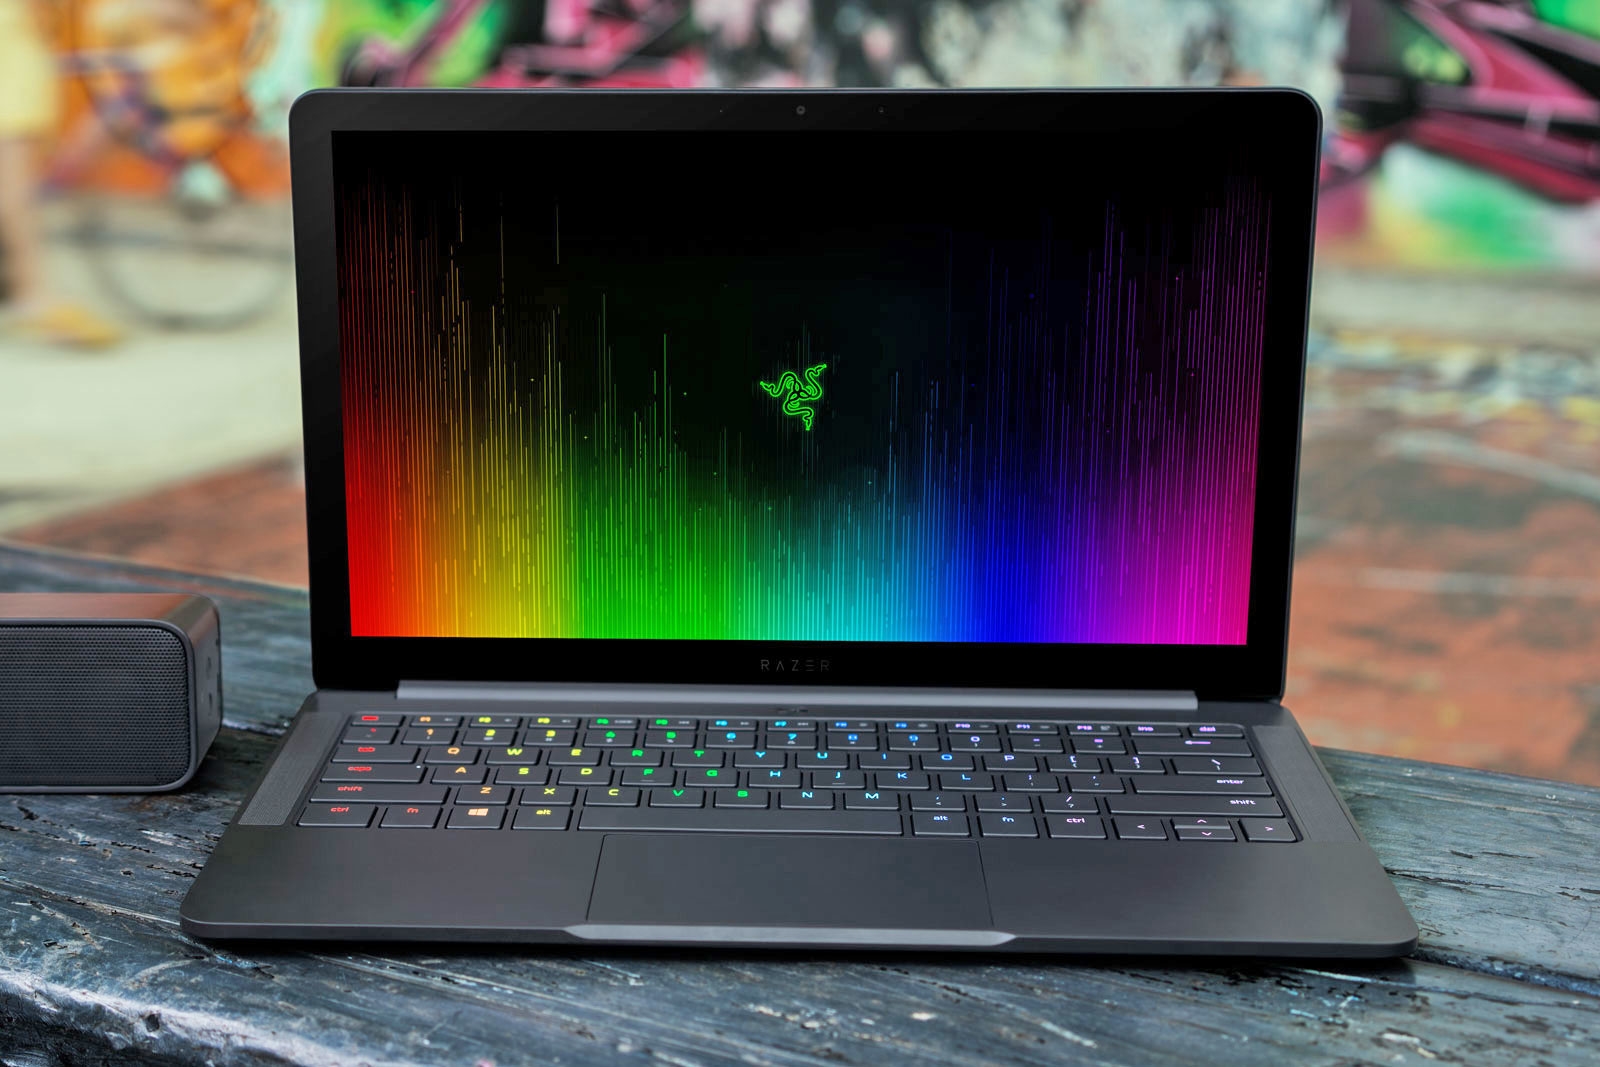 Razer's Blade Stealth laptop now packs a quad-core processor | DeviceDaily.com